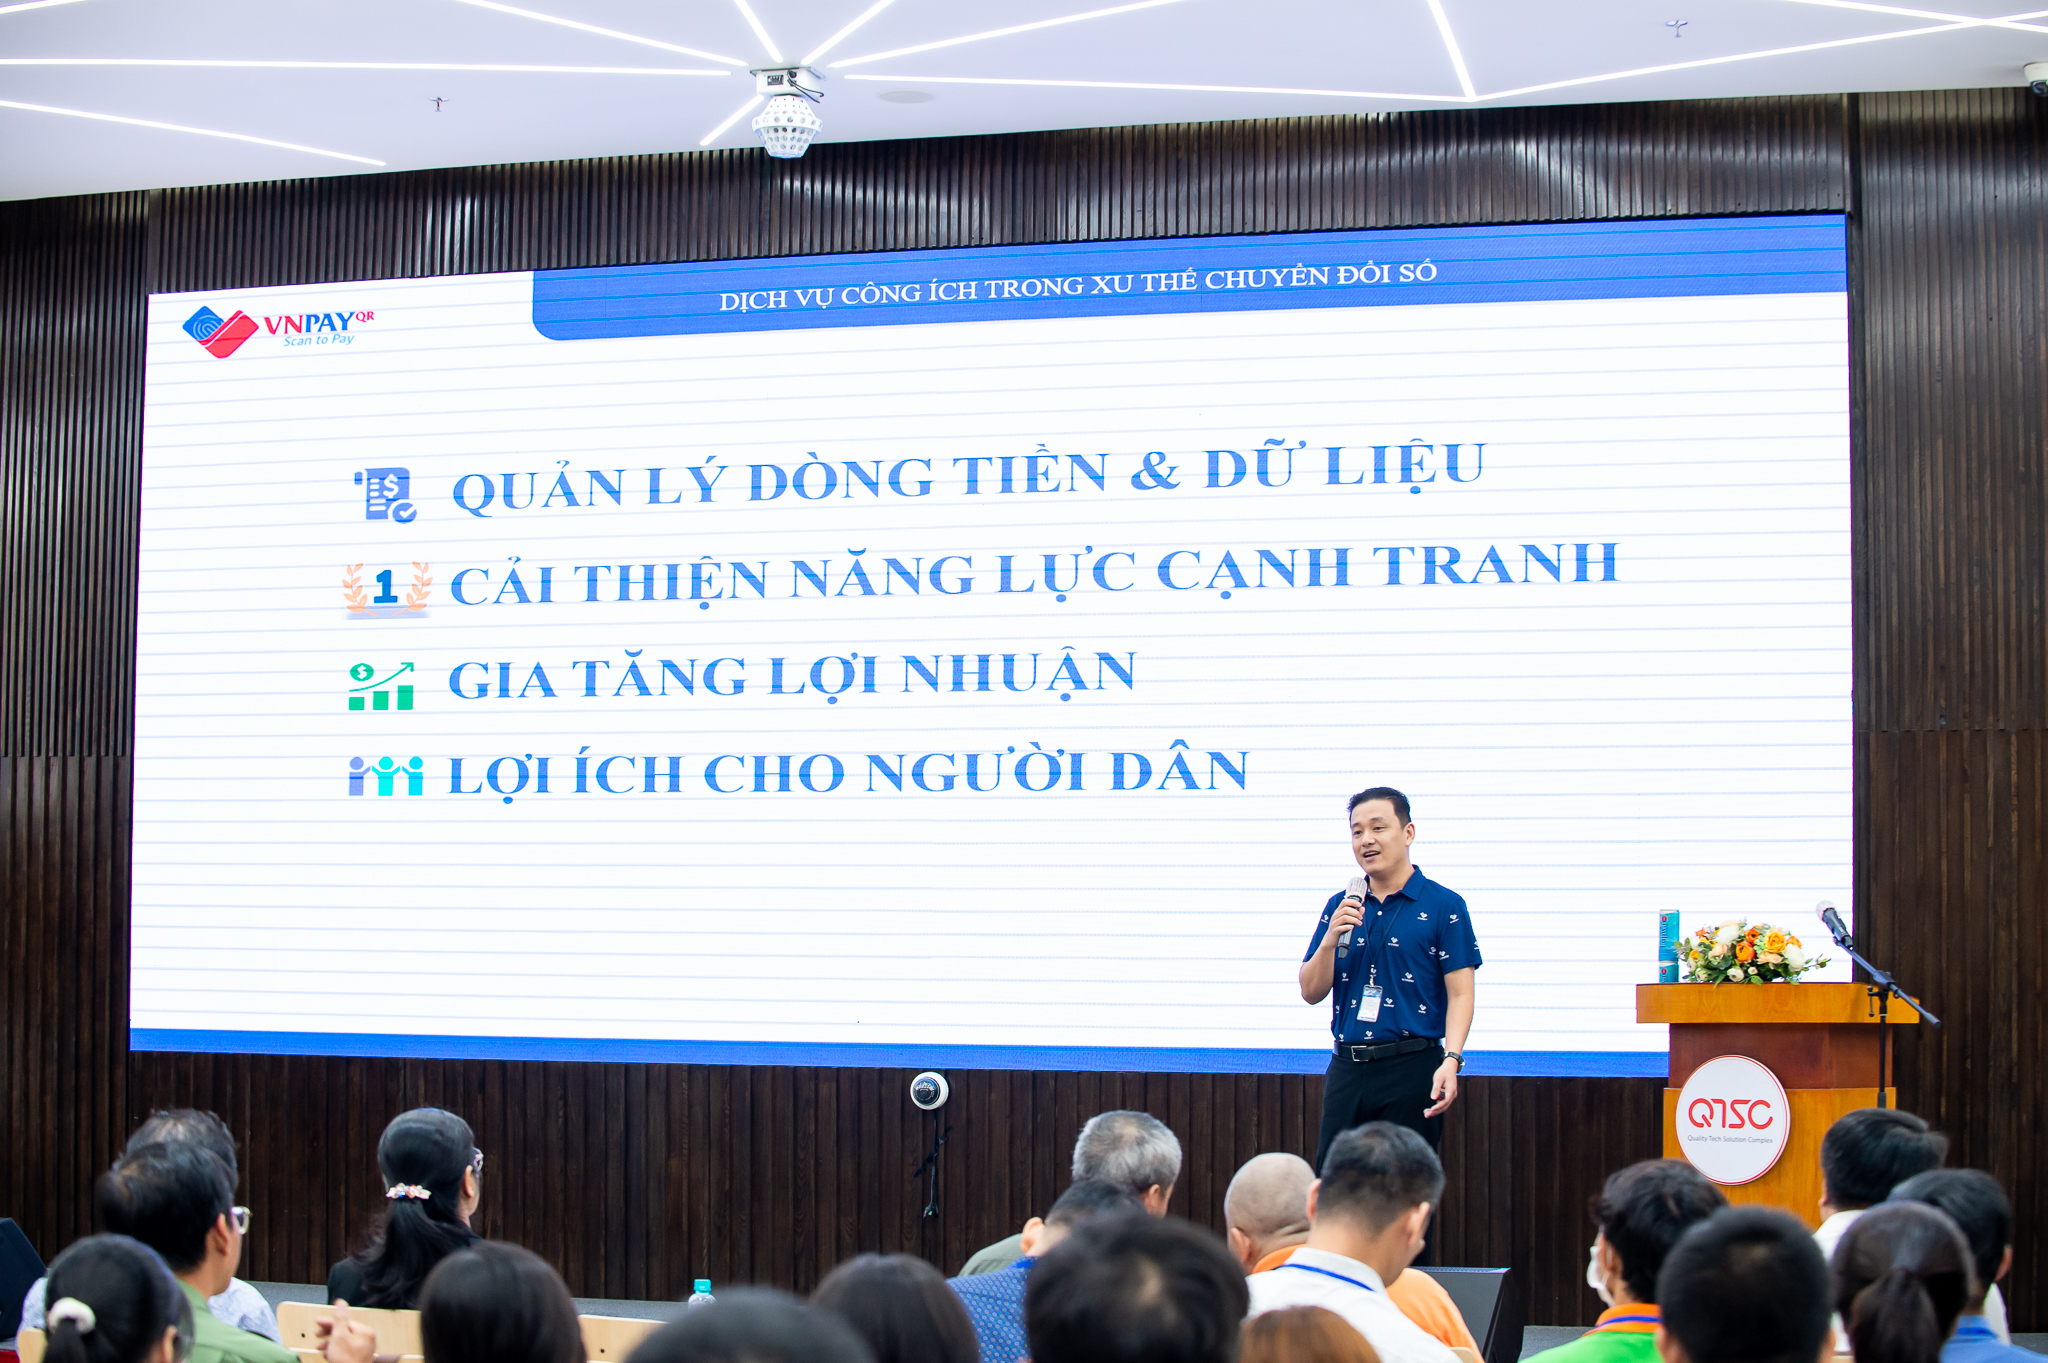 Hình 6. Ông Hoàng Lê Vân – Trưởng Ban Hành chính công – Công ty VNPAY giới thiệu về ứng dụng thanh toán không tiền mặt VNPAY trong việc cung cấp dịch vụ công ích.